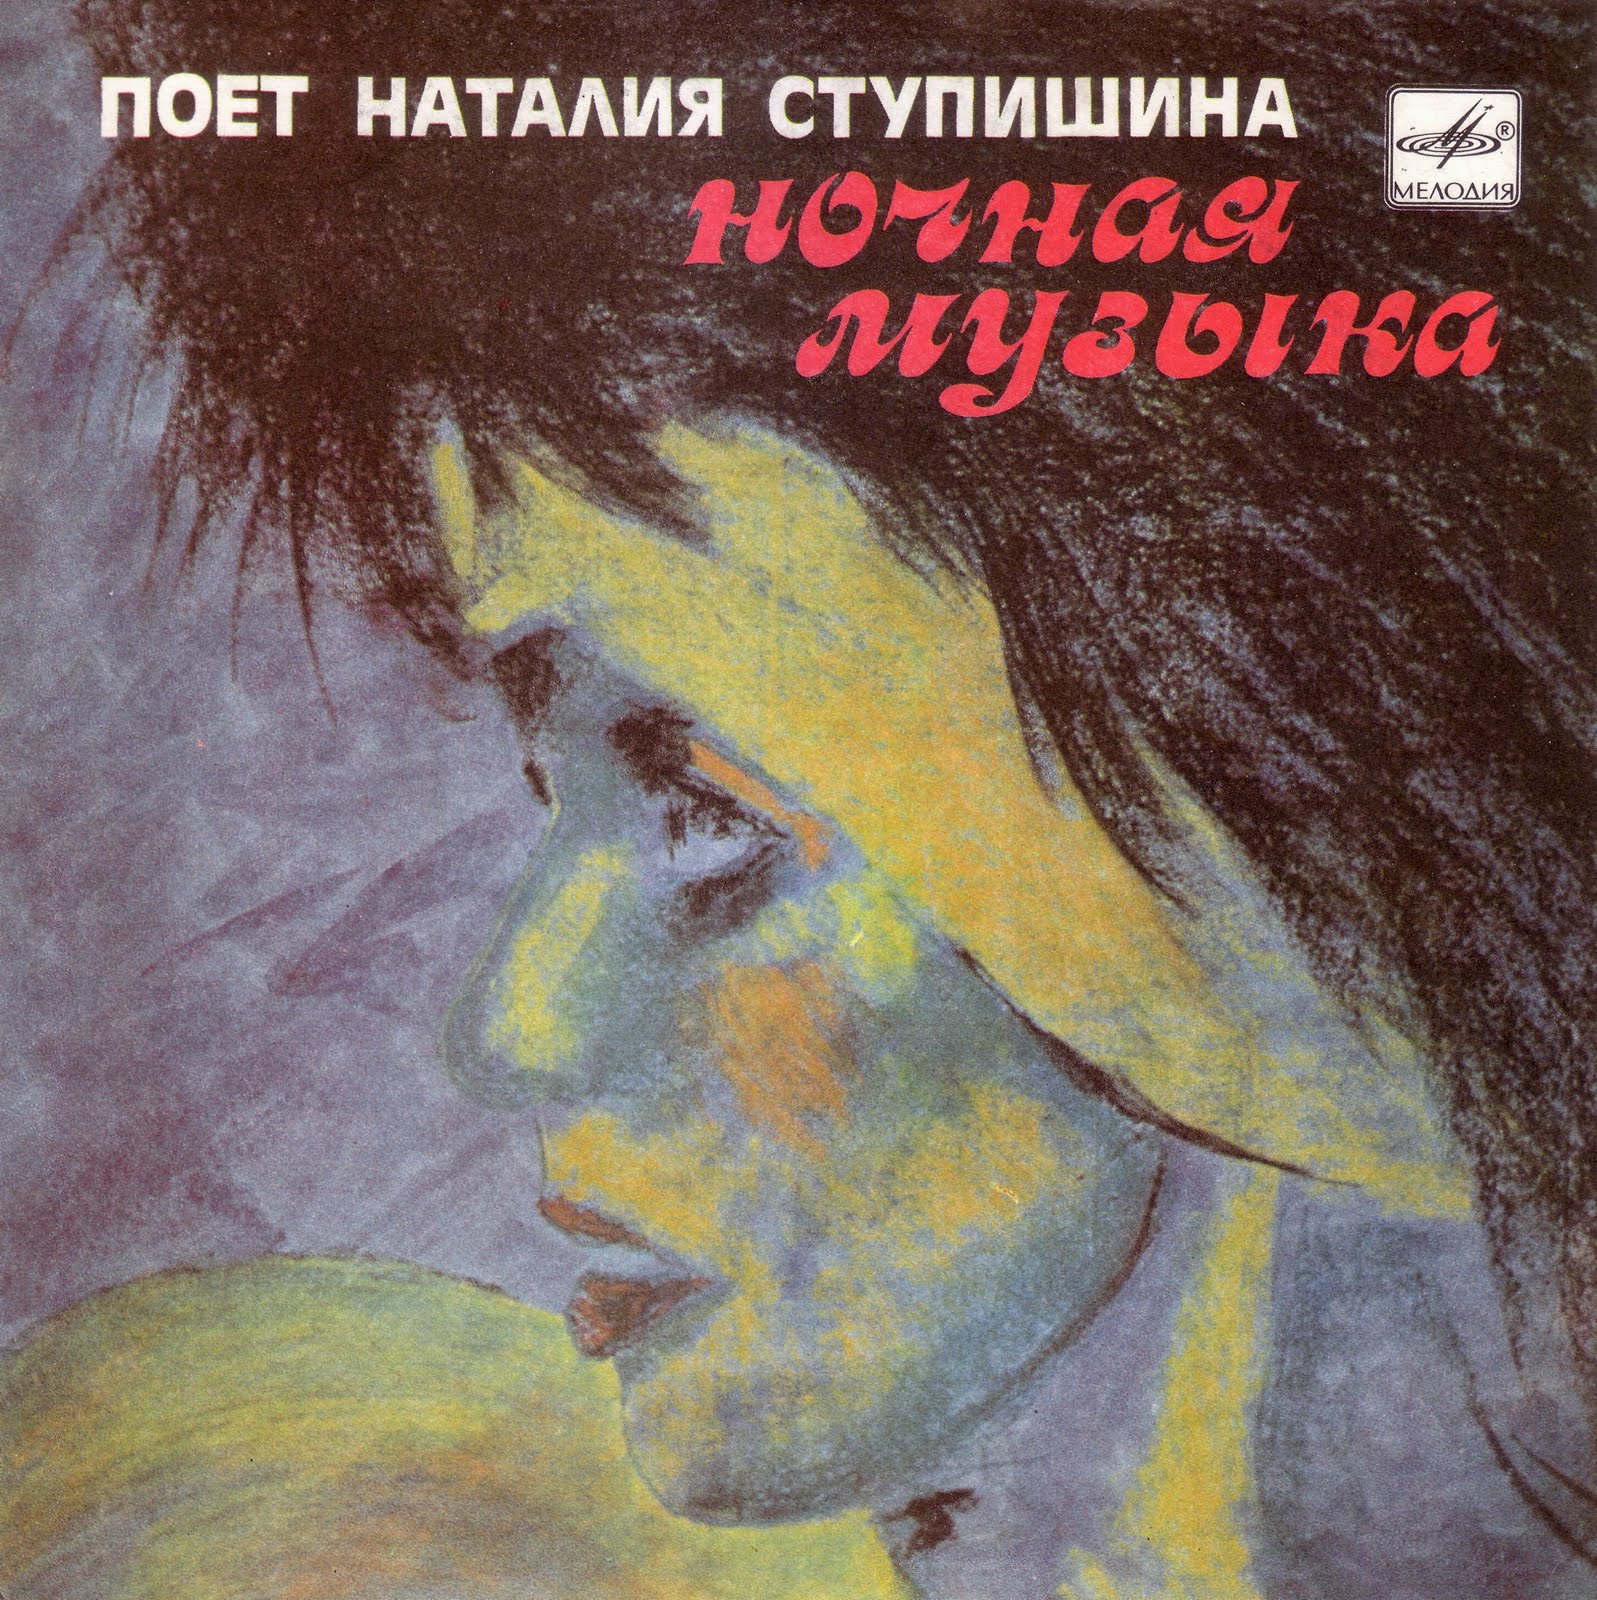 Поет Наталия Ступишина. "Ночная музыка"